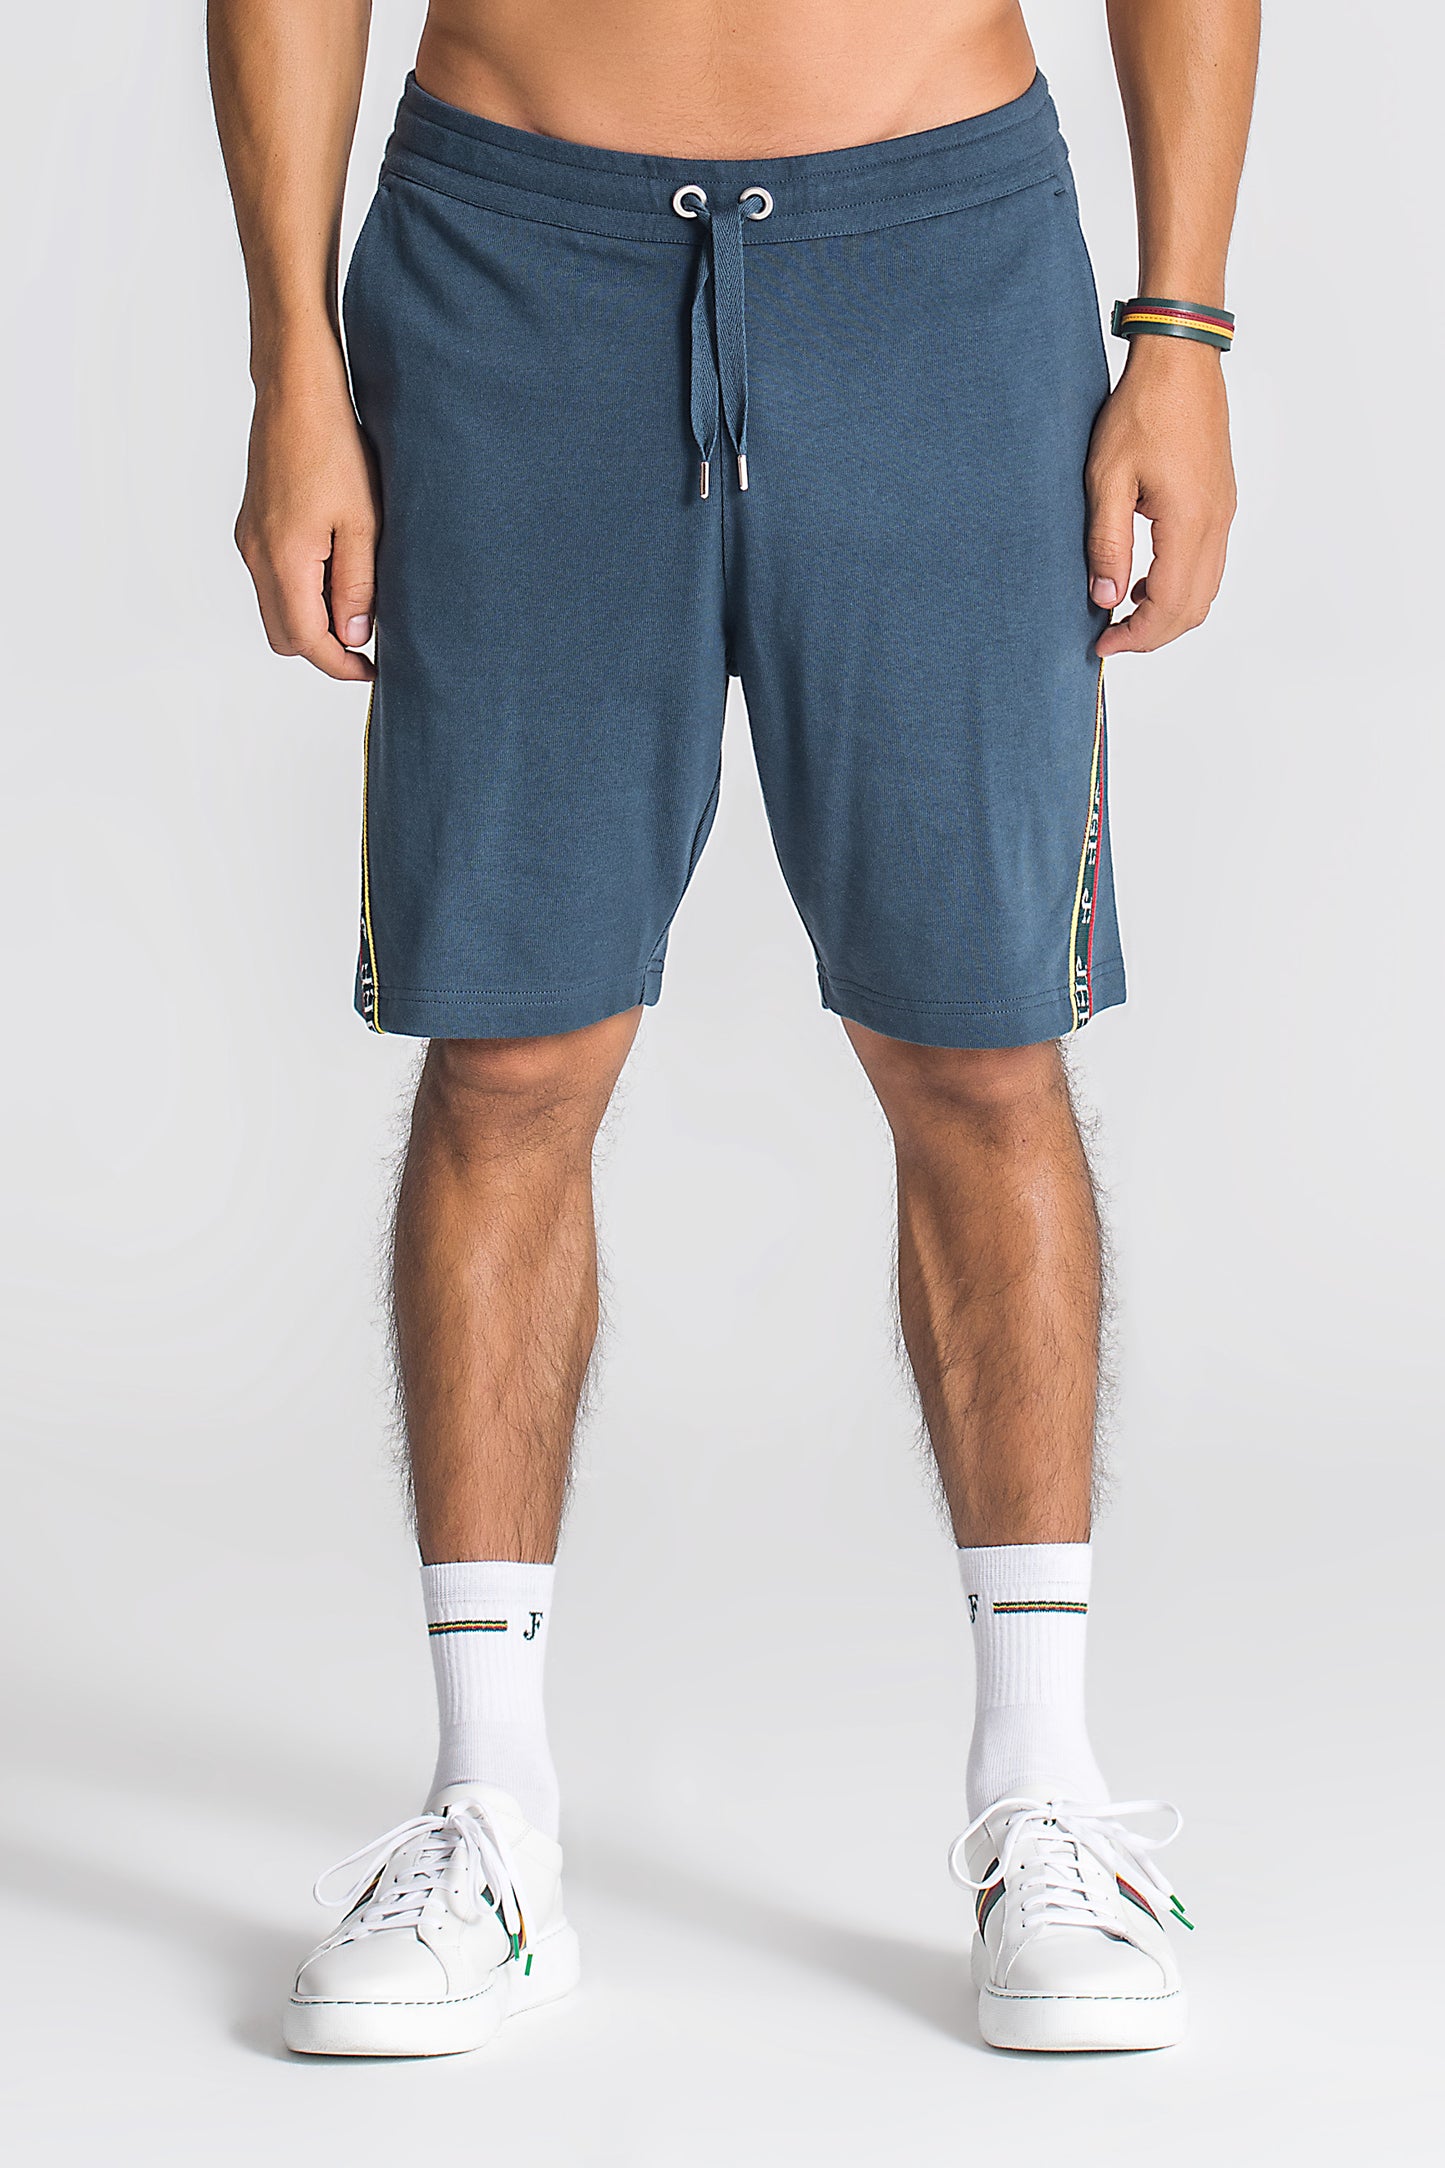 Donatello Shorts